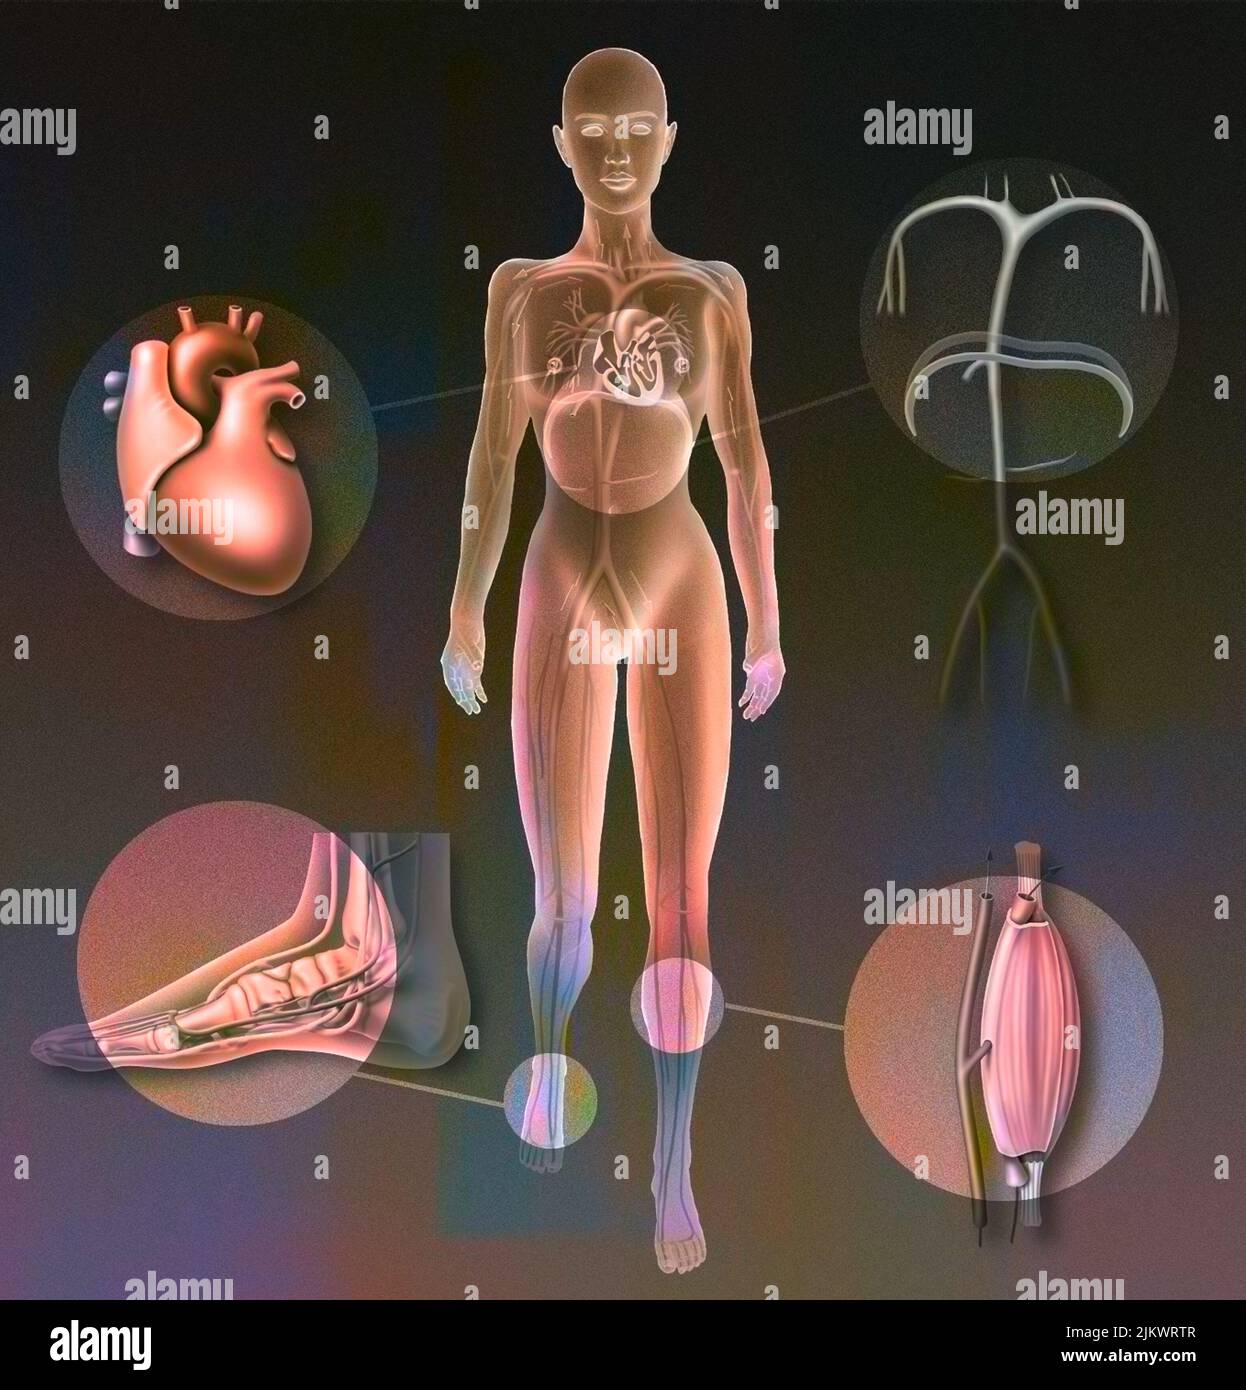 Pumpen, die die Durchblutung ermöglichen: Herz-, Plantar-, Muskel-, Zwerchfellpumpe. Stockfoto